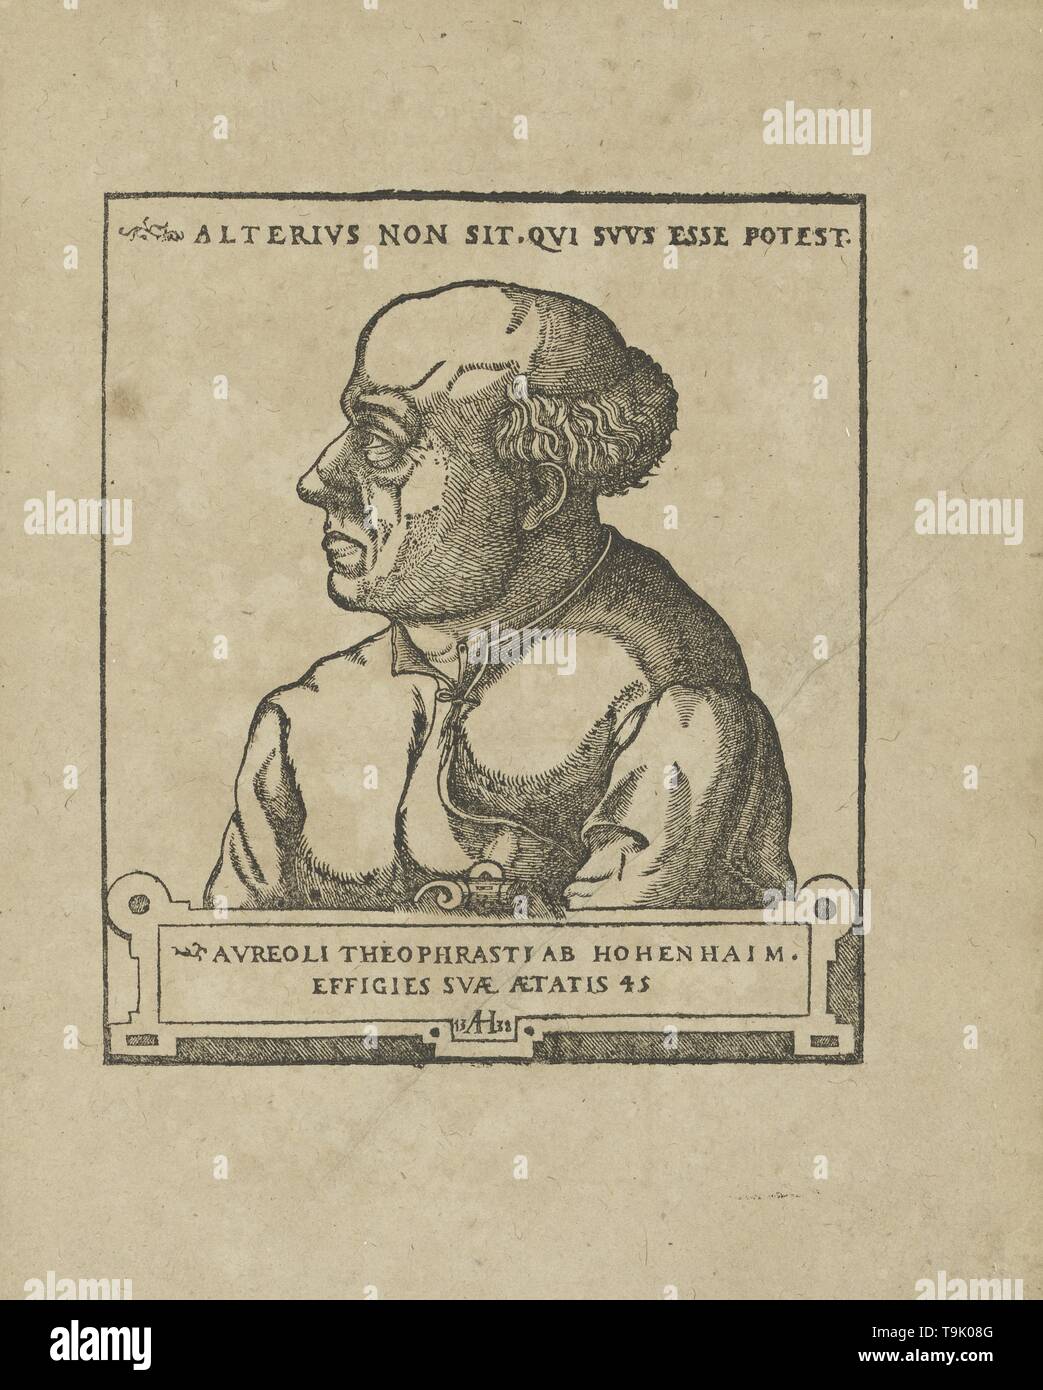 Philippus Theophrastus Aureolus Bombastus von Hohenheim (Paracelsus). Museum: PRIVATE COLLECTION. Author: ANONYMOUS. Stock Photo